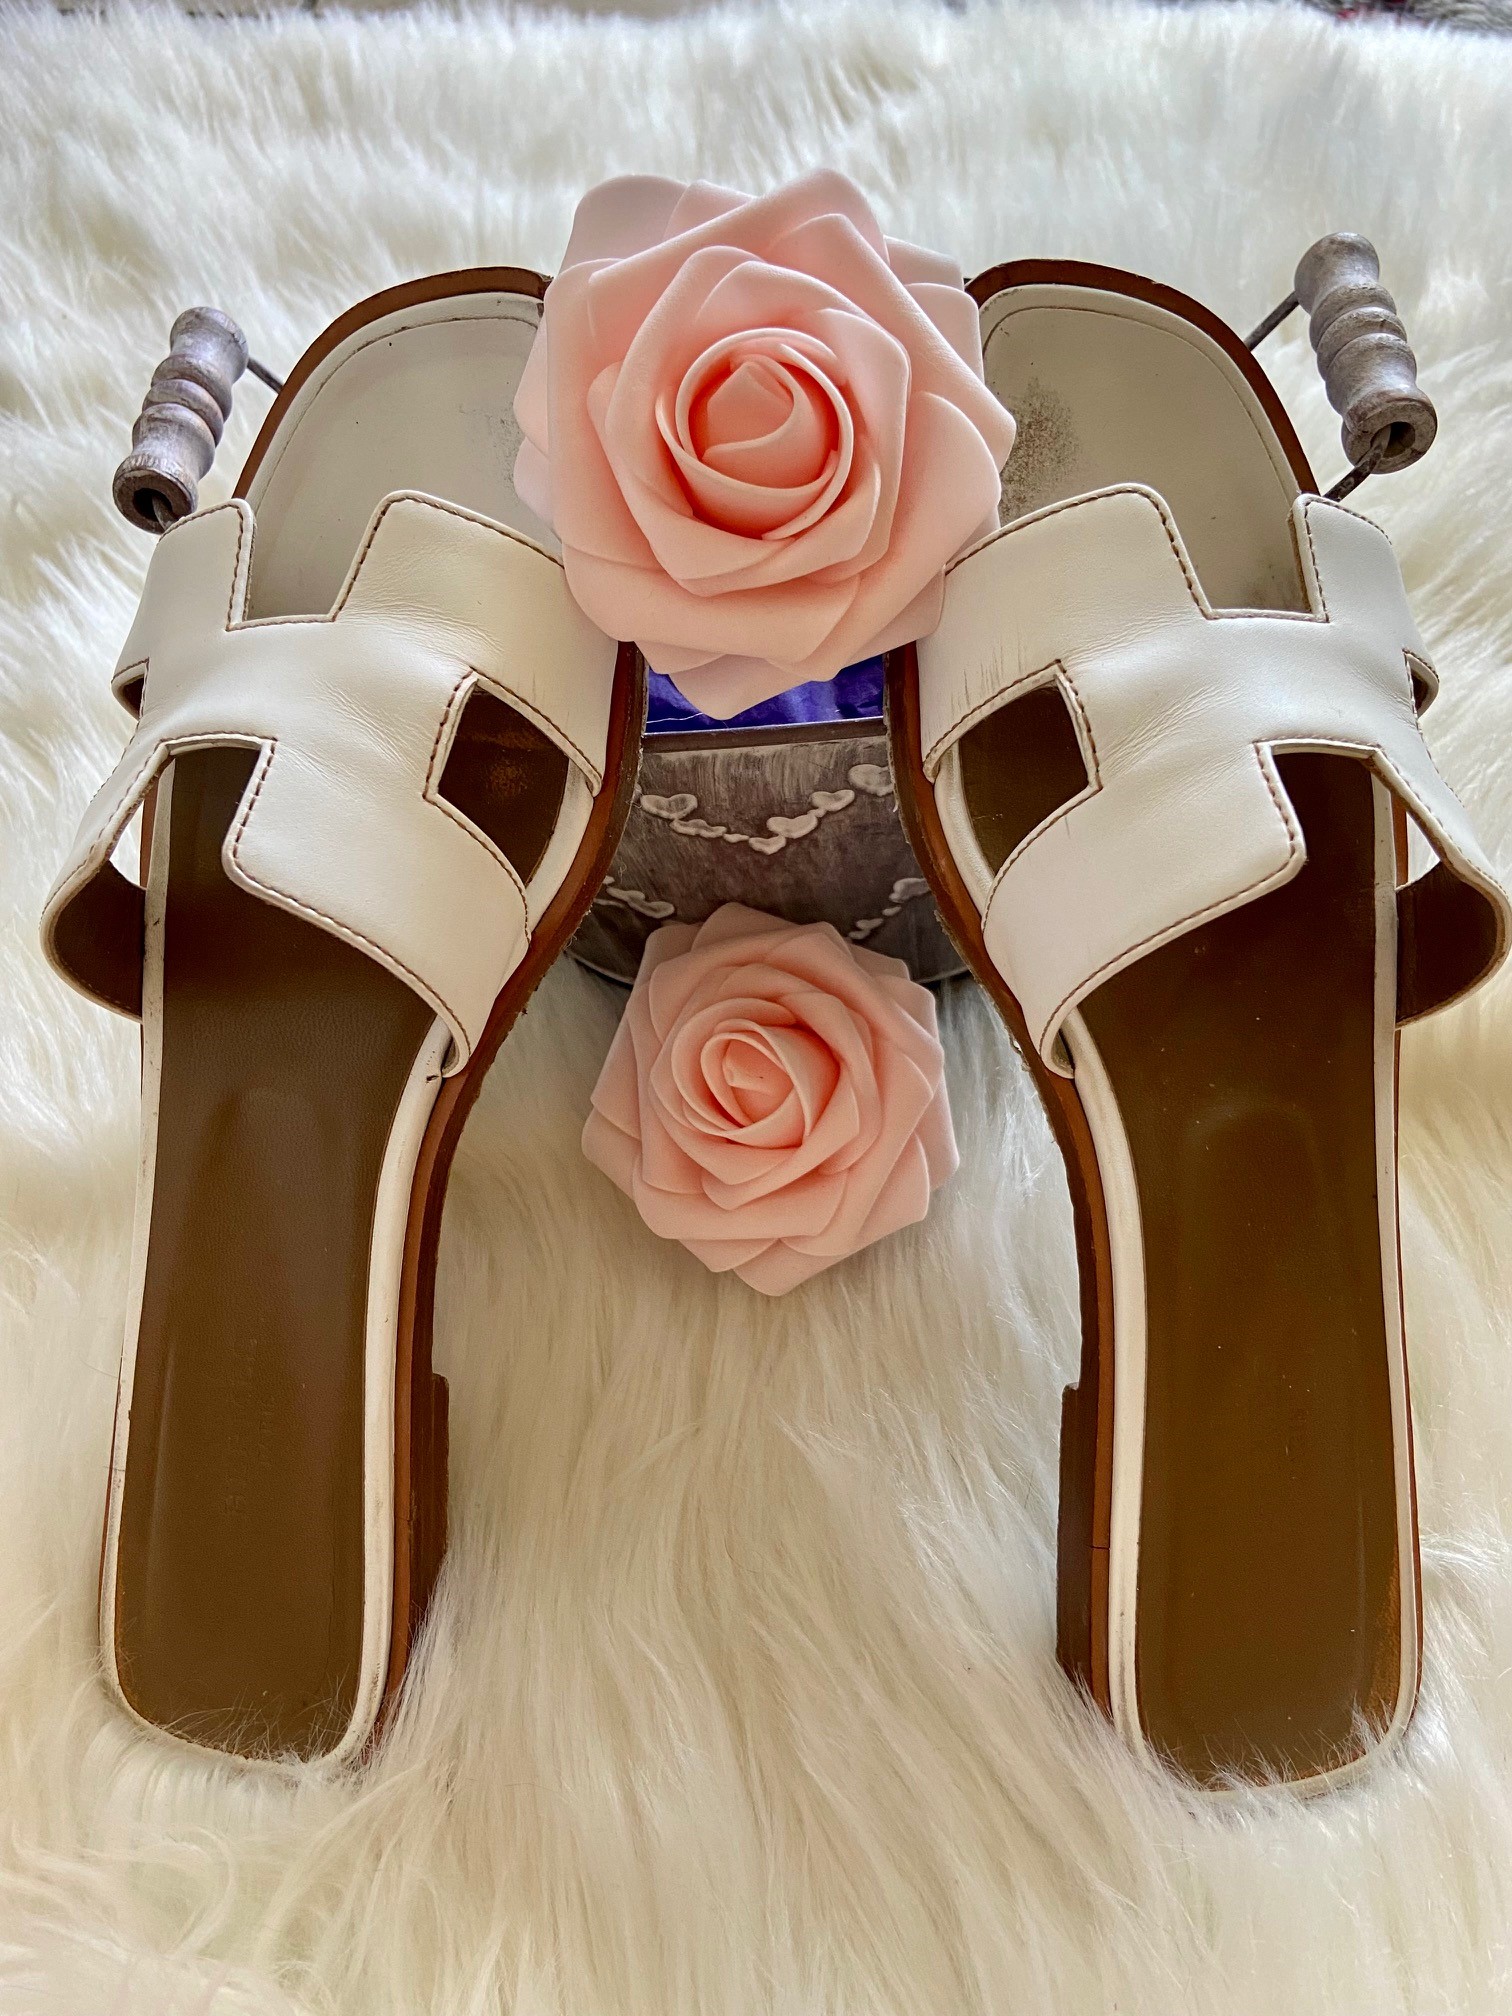 Hermès - Oran Sandal - Women's Shoes